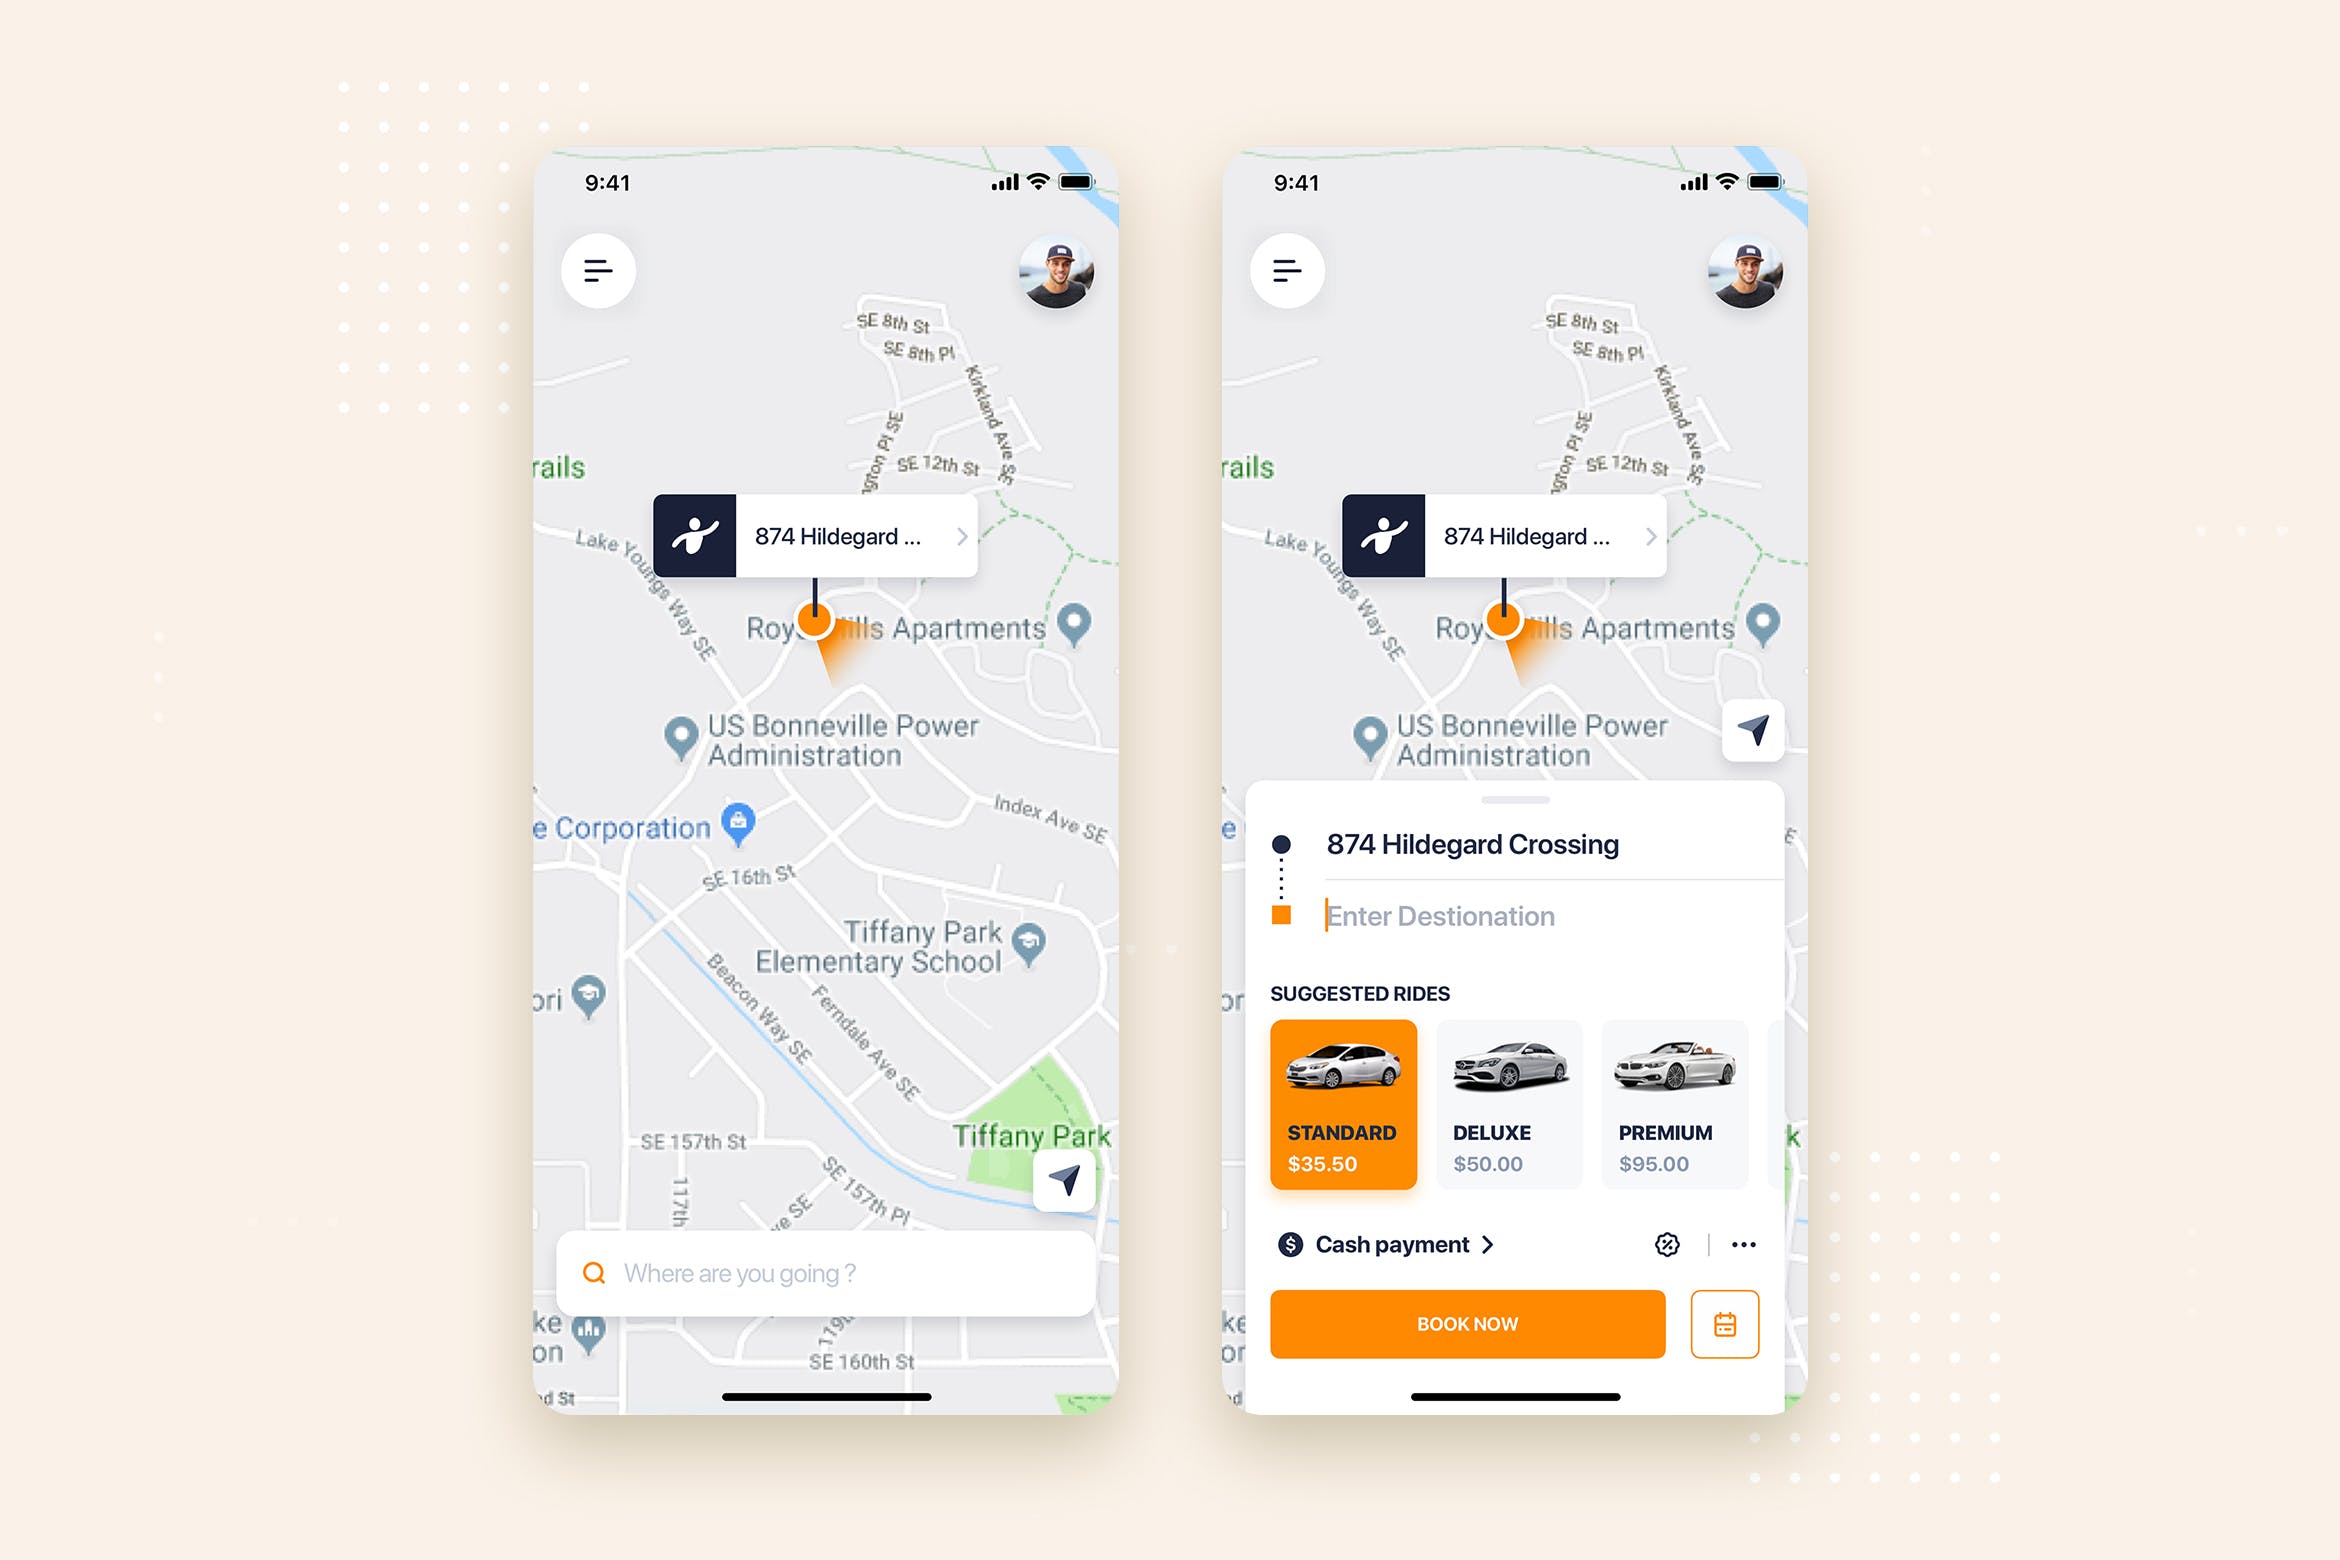 网约车APP应用预约界面UI设计蚂蚁素材精选模板 Taxi Booking Mobile App UI Kit Template插图